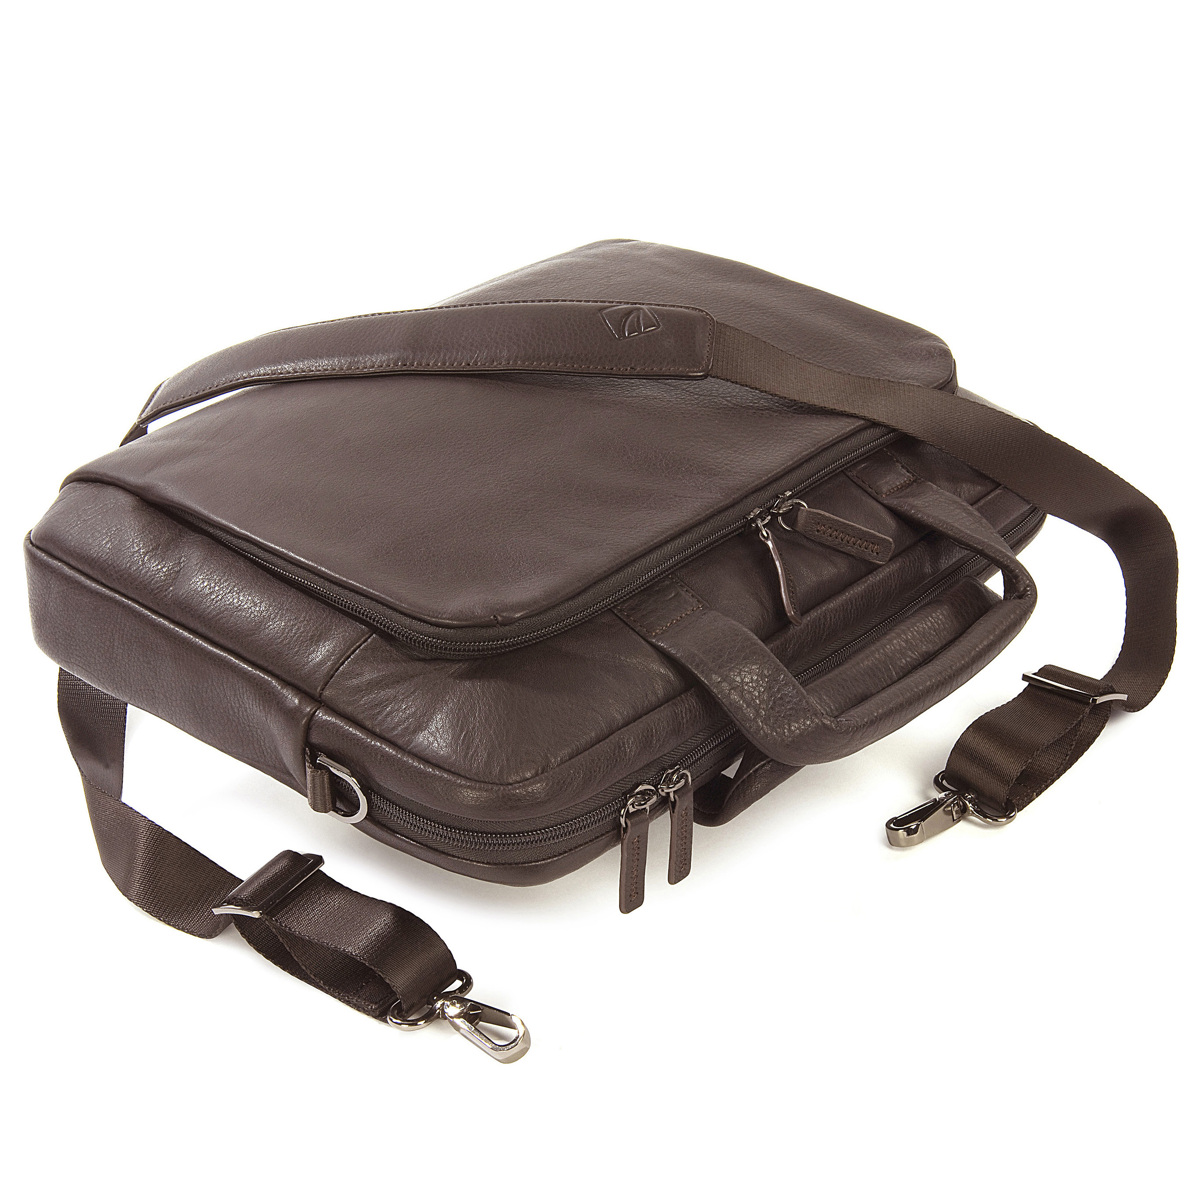 TUCANO One Premium Notebook Tasche Leder, Braun Universal für Umhängetasche